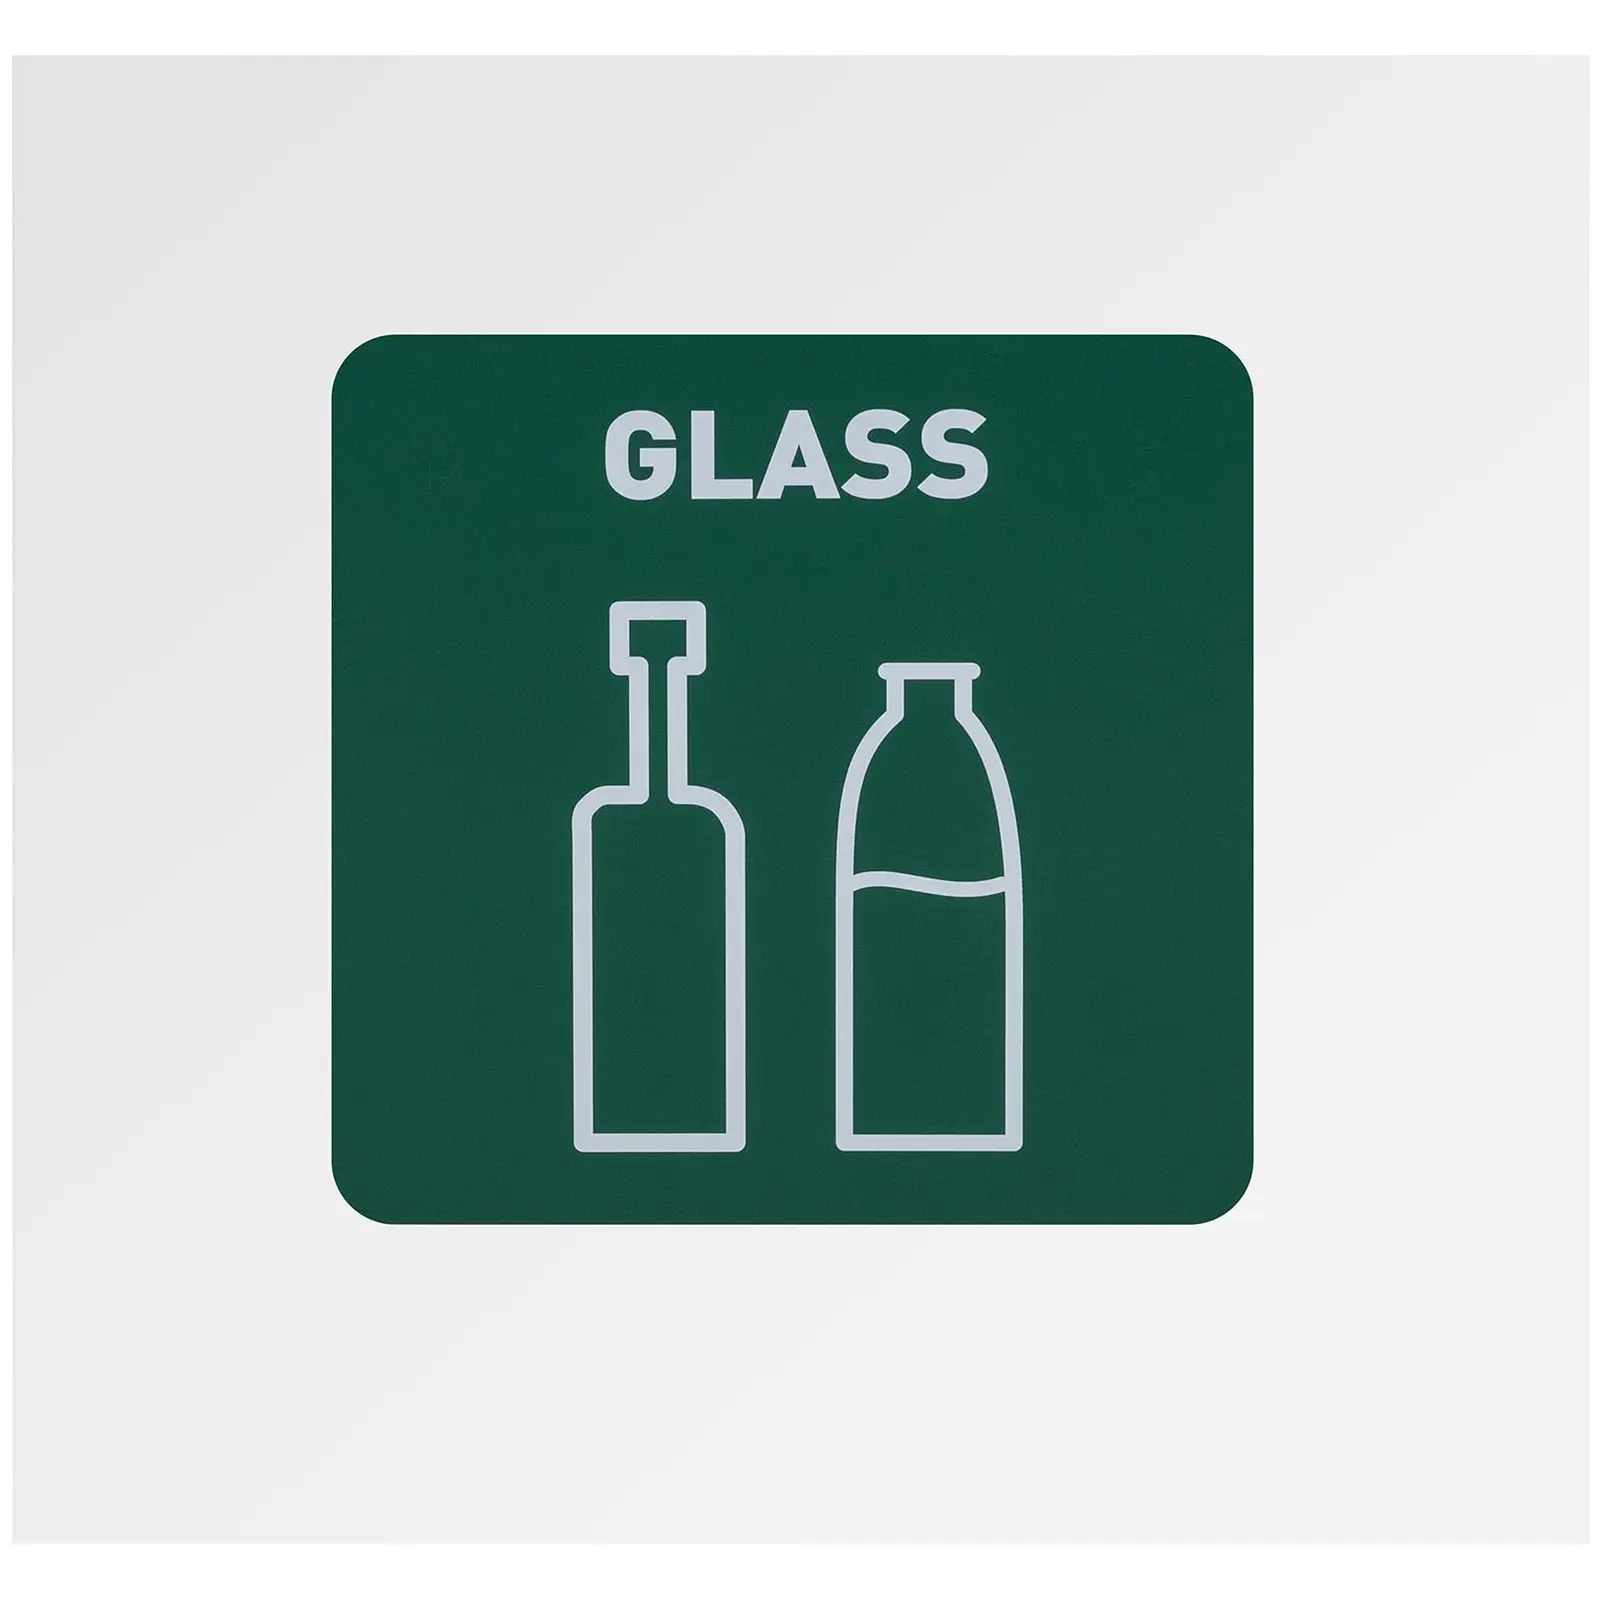 Källsorteringskärl - 60 L - Vit - Med etikett för glas